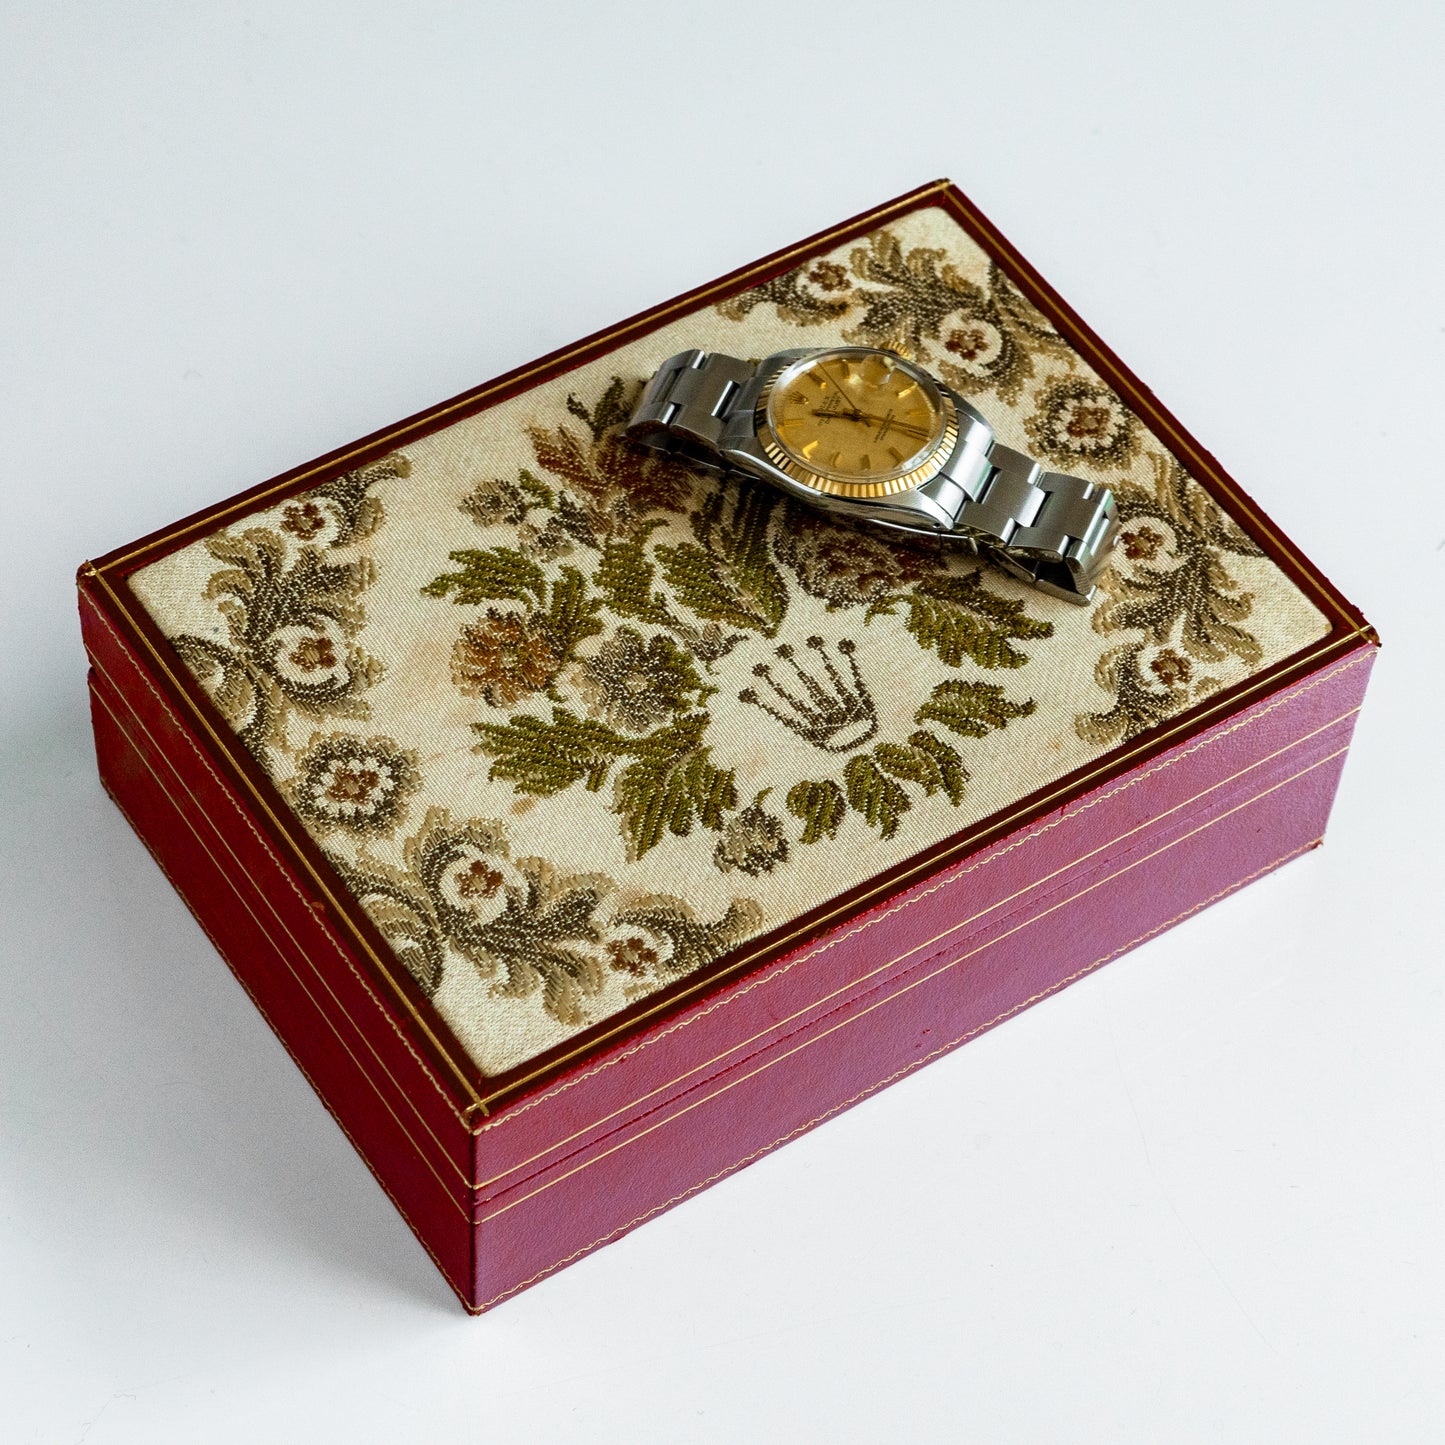 No. 325 / Rolex Watch Box - 1970s